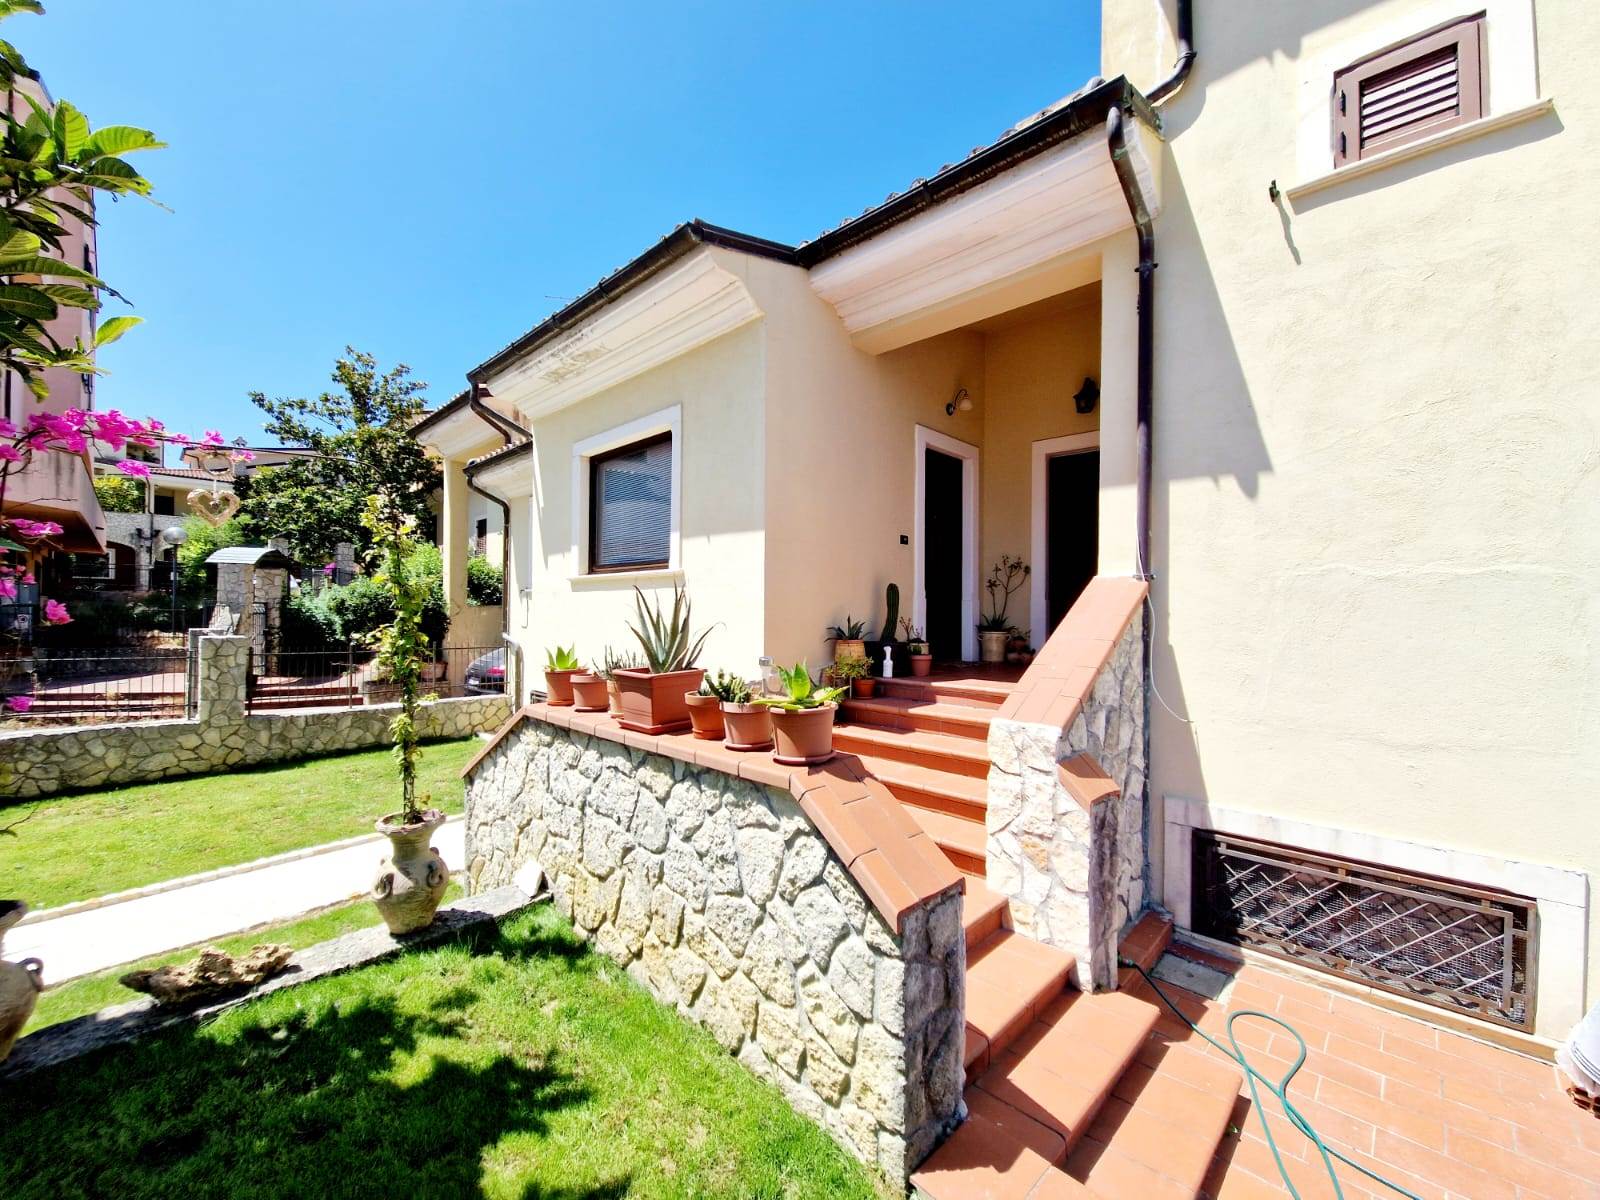 Villa in vendita a Rende, 4 locali, zona Località: ARCAVACATA, prezzo € 260.000 | PortaleAgenzieImmobiliari.it